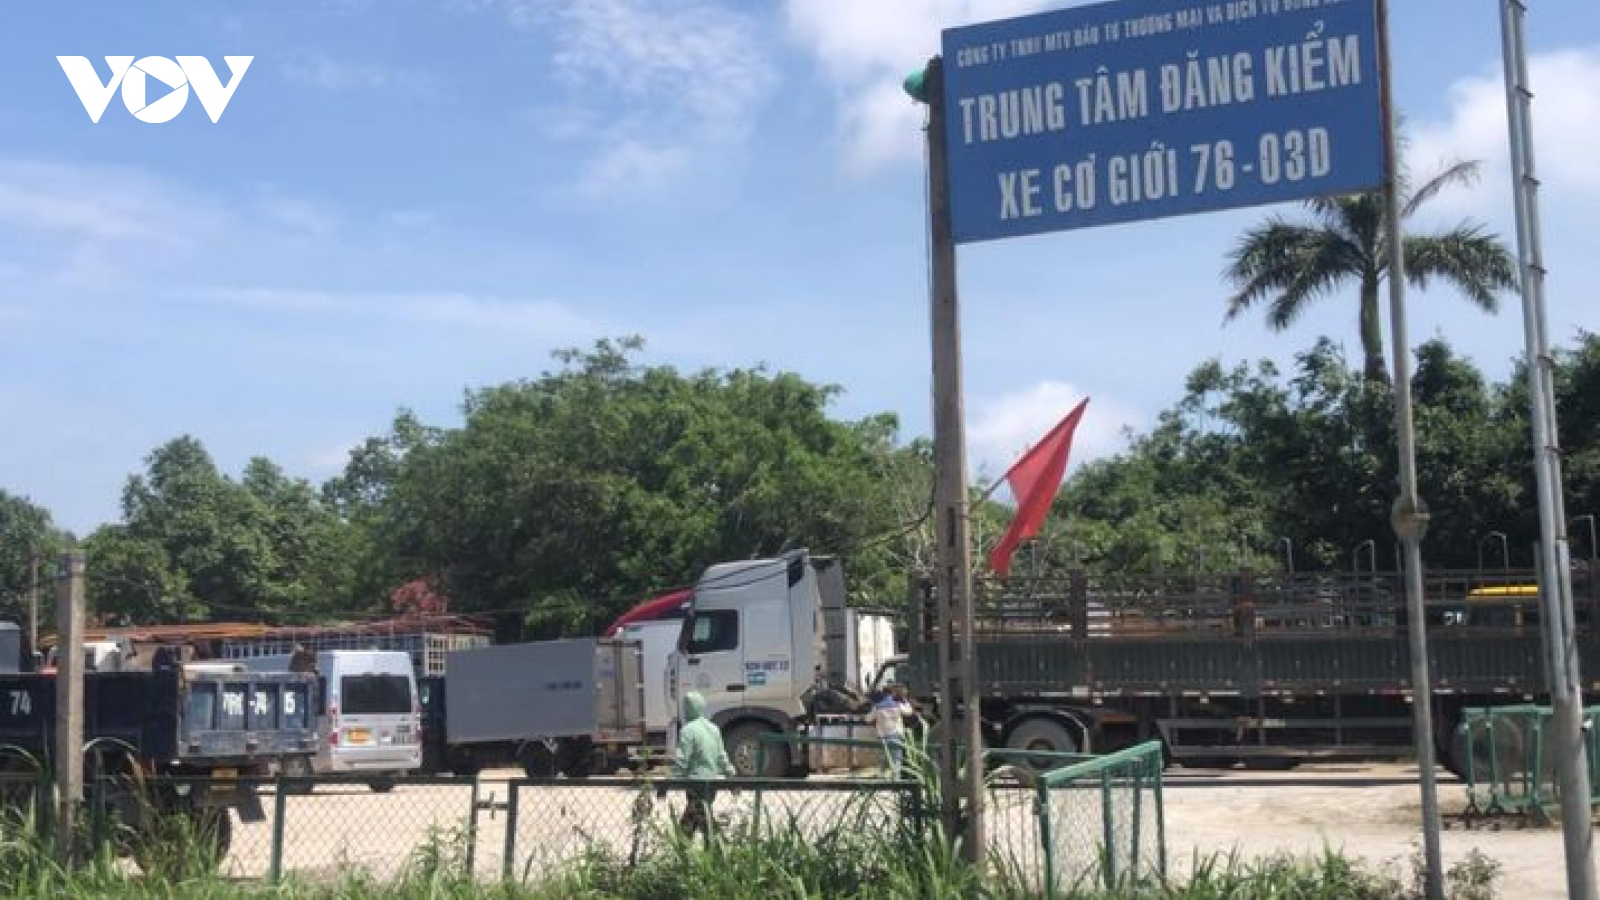 2 lãnh đạo Trung tâm Đăng kiểm xe cơ giới 76-03D ở Quảng Ngãi sai phạm những gì?